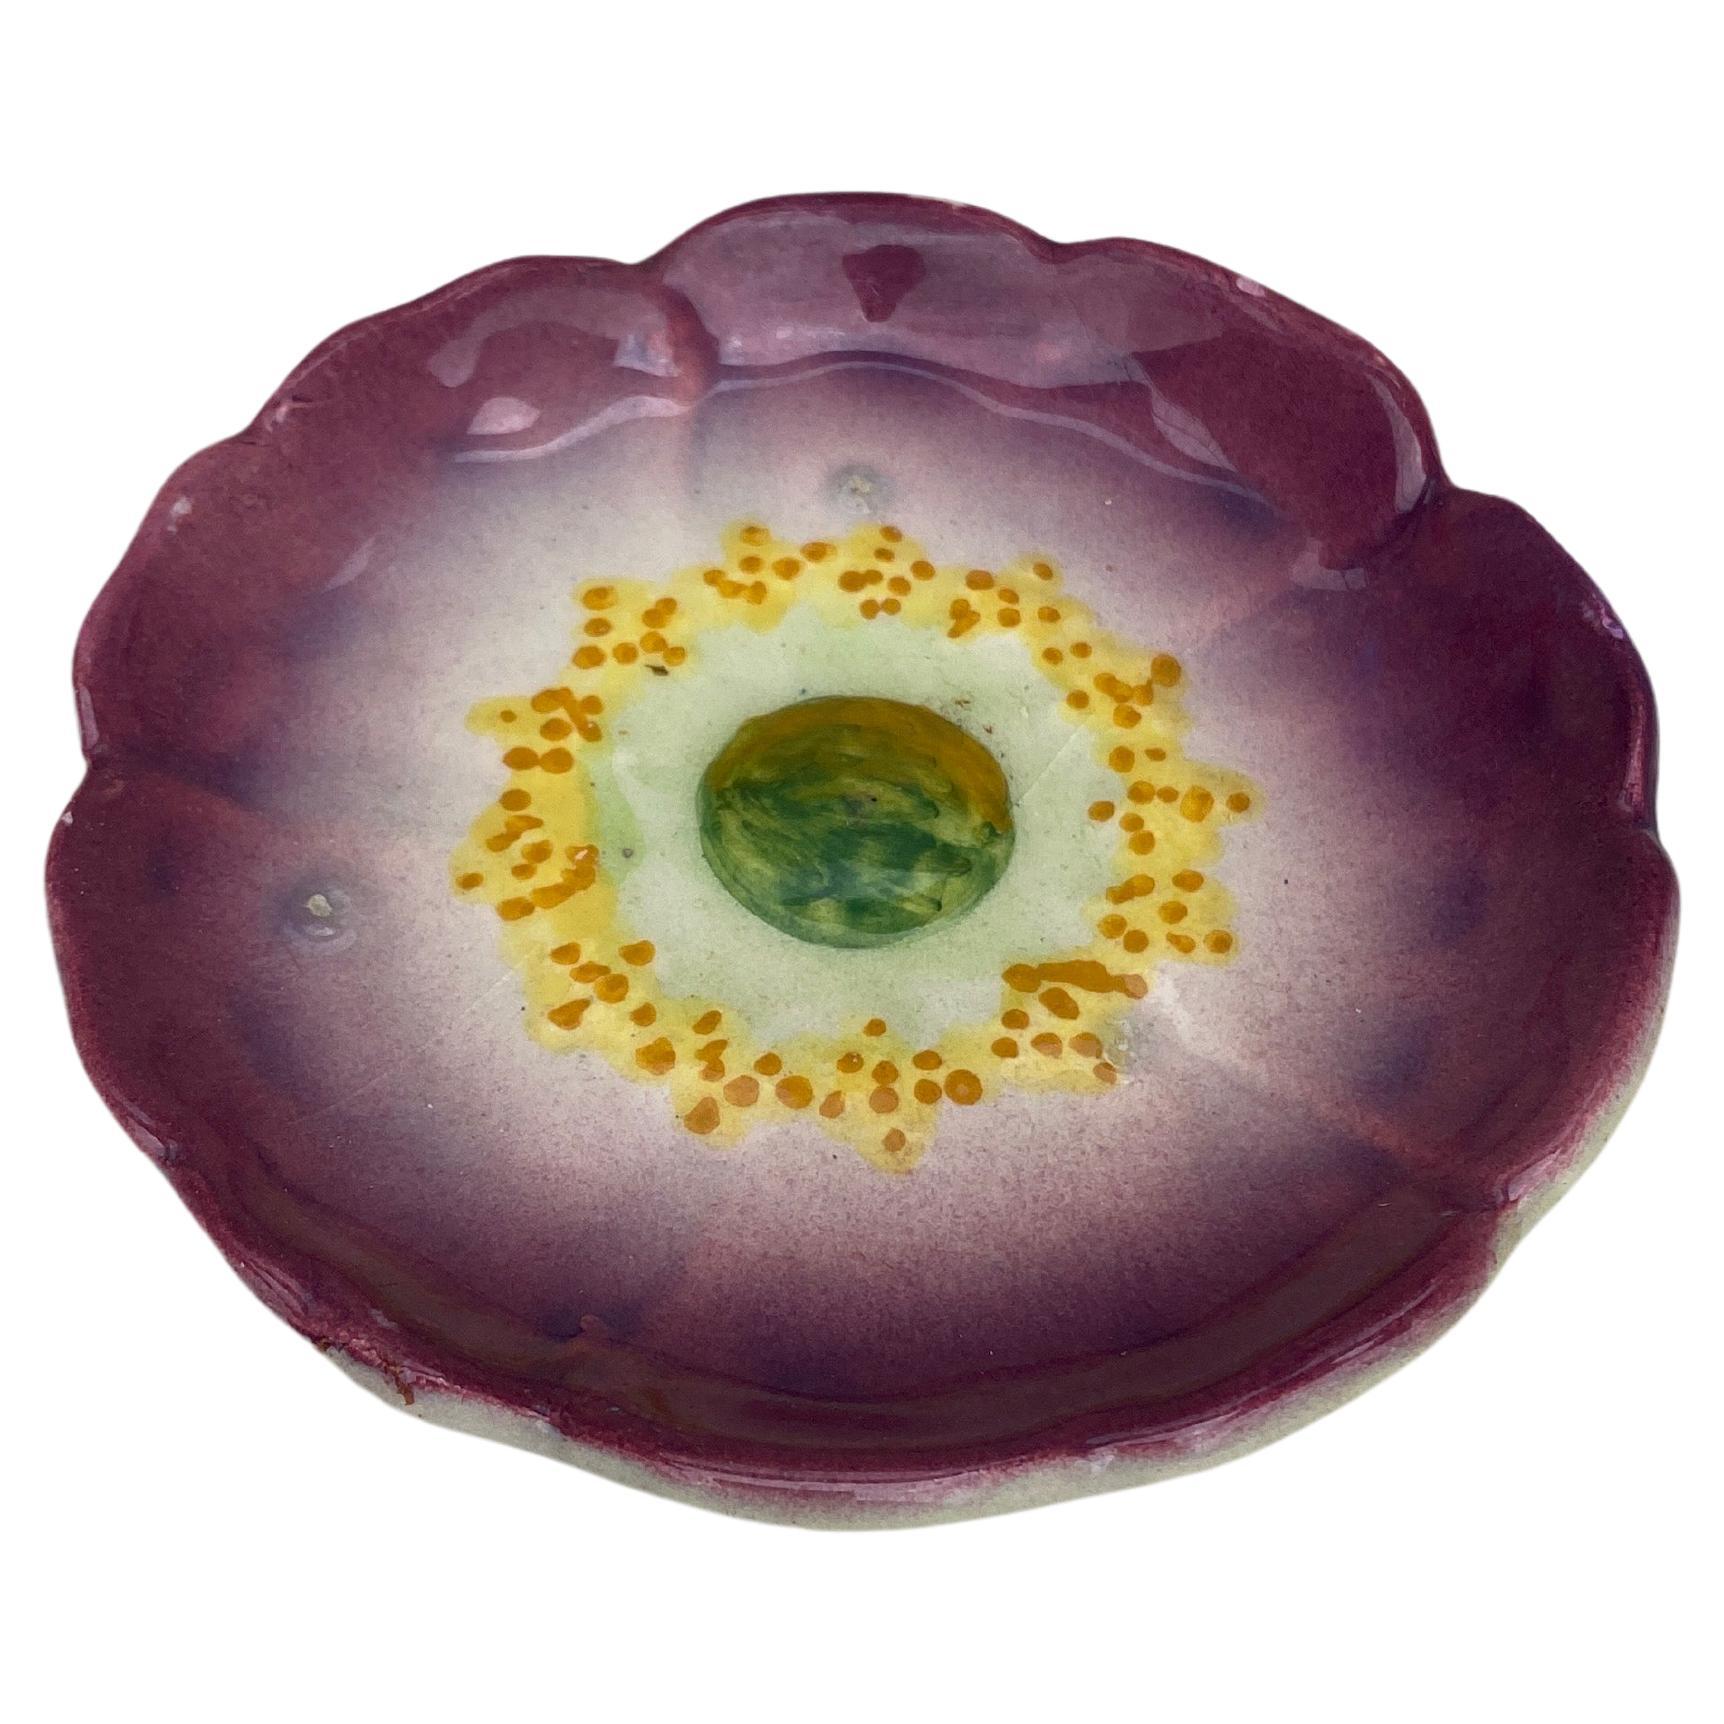 Petit pavot violet en majolique Delphin Massier Fils, vers 1890.
5,3 pouces de diamètre.